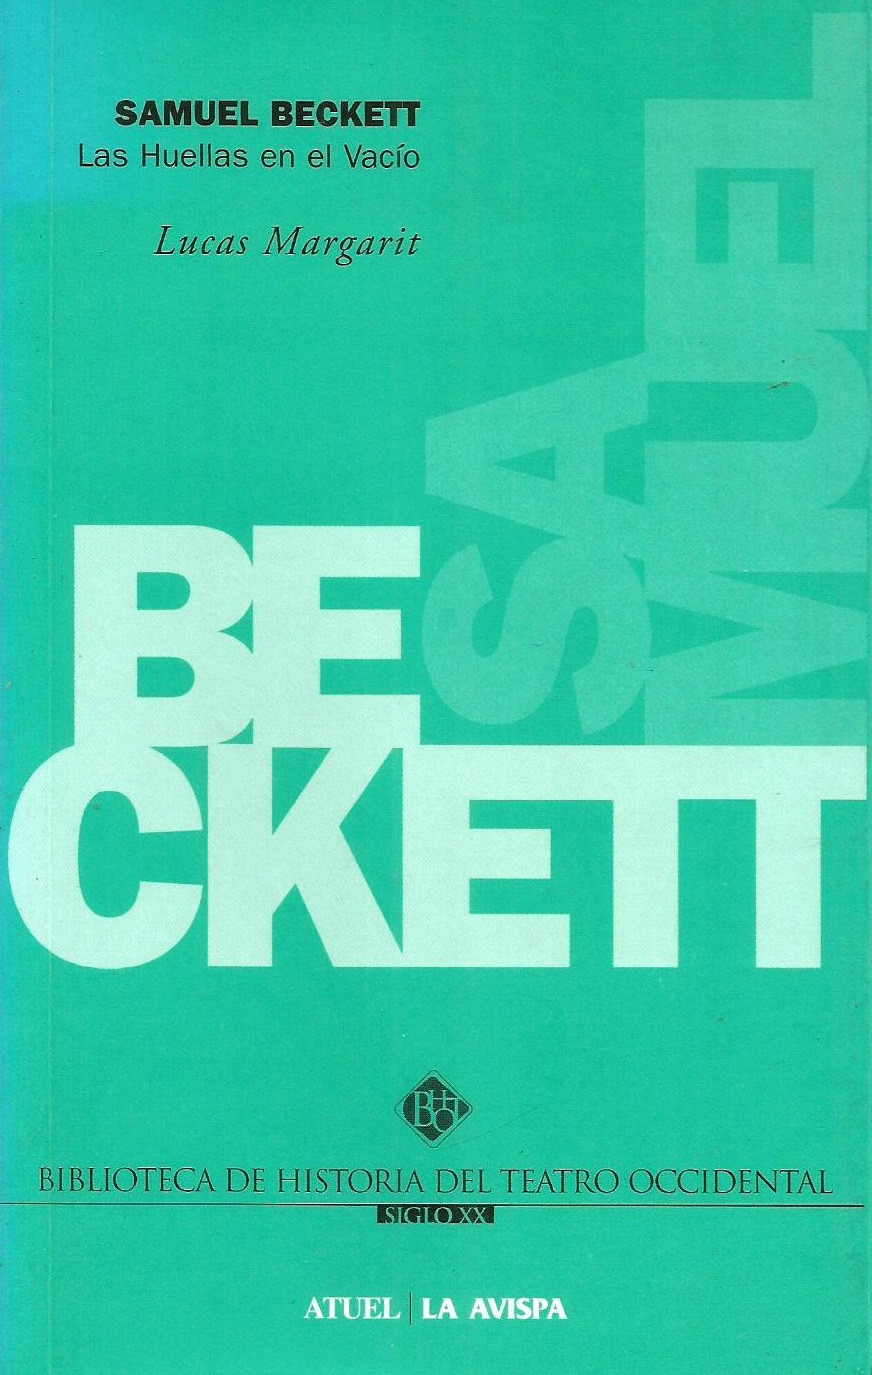 Libros Margarit 7   Samuel Beckett. Las huellas en el vacu00edo